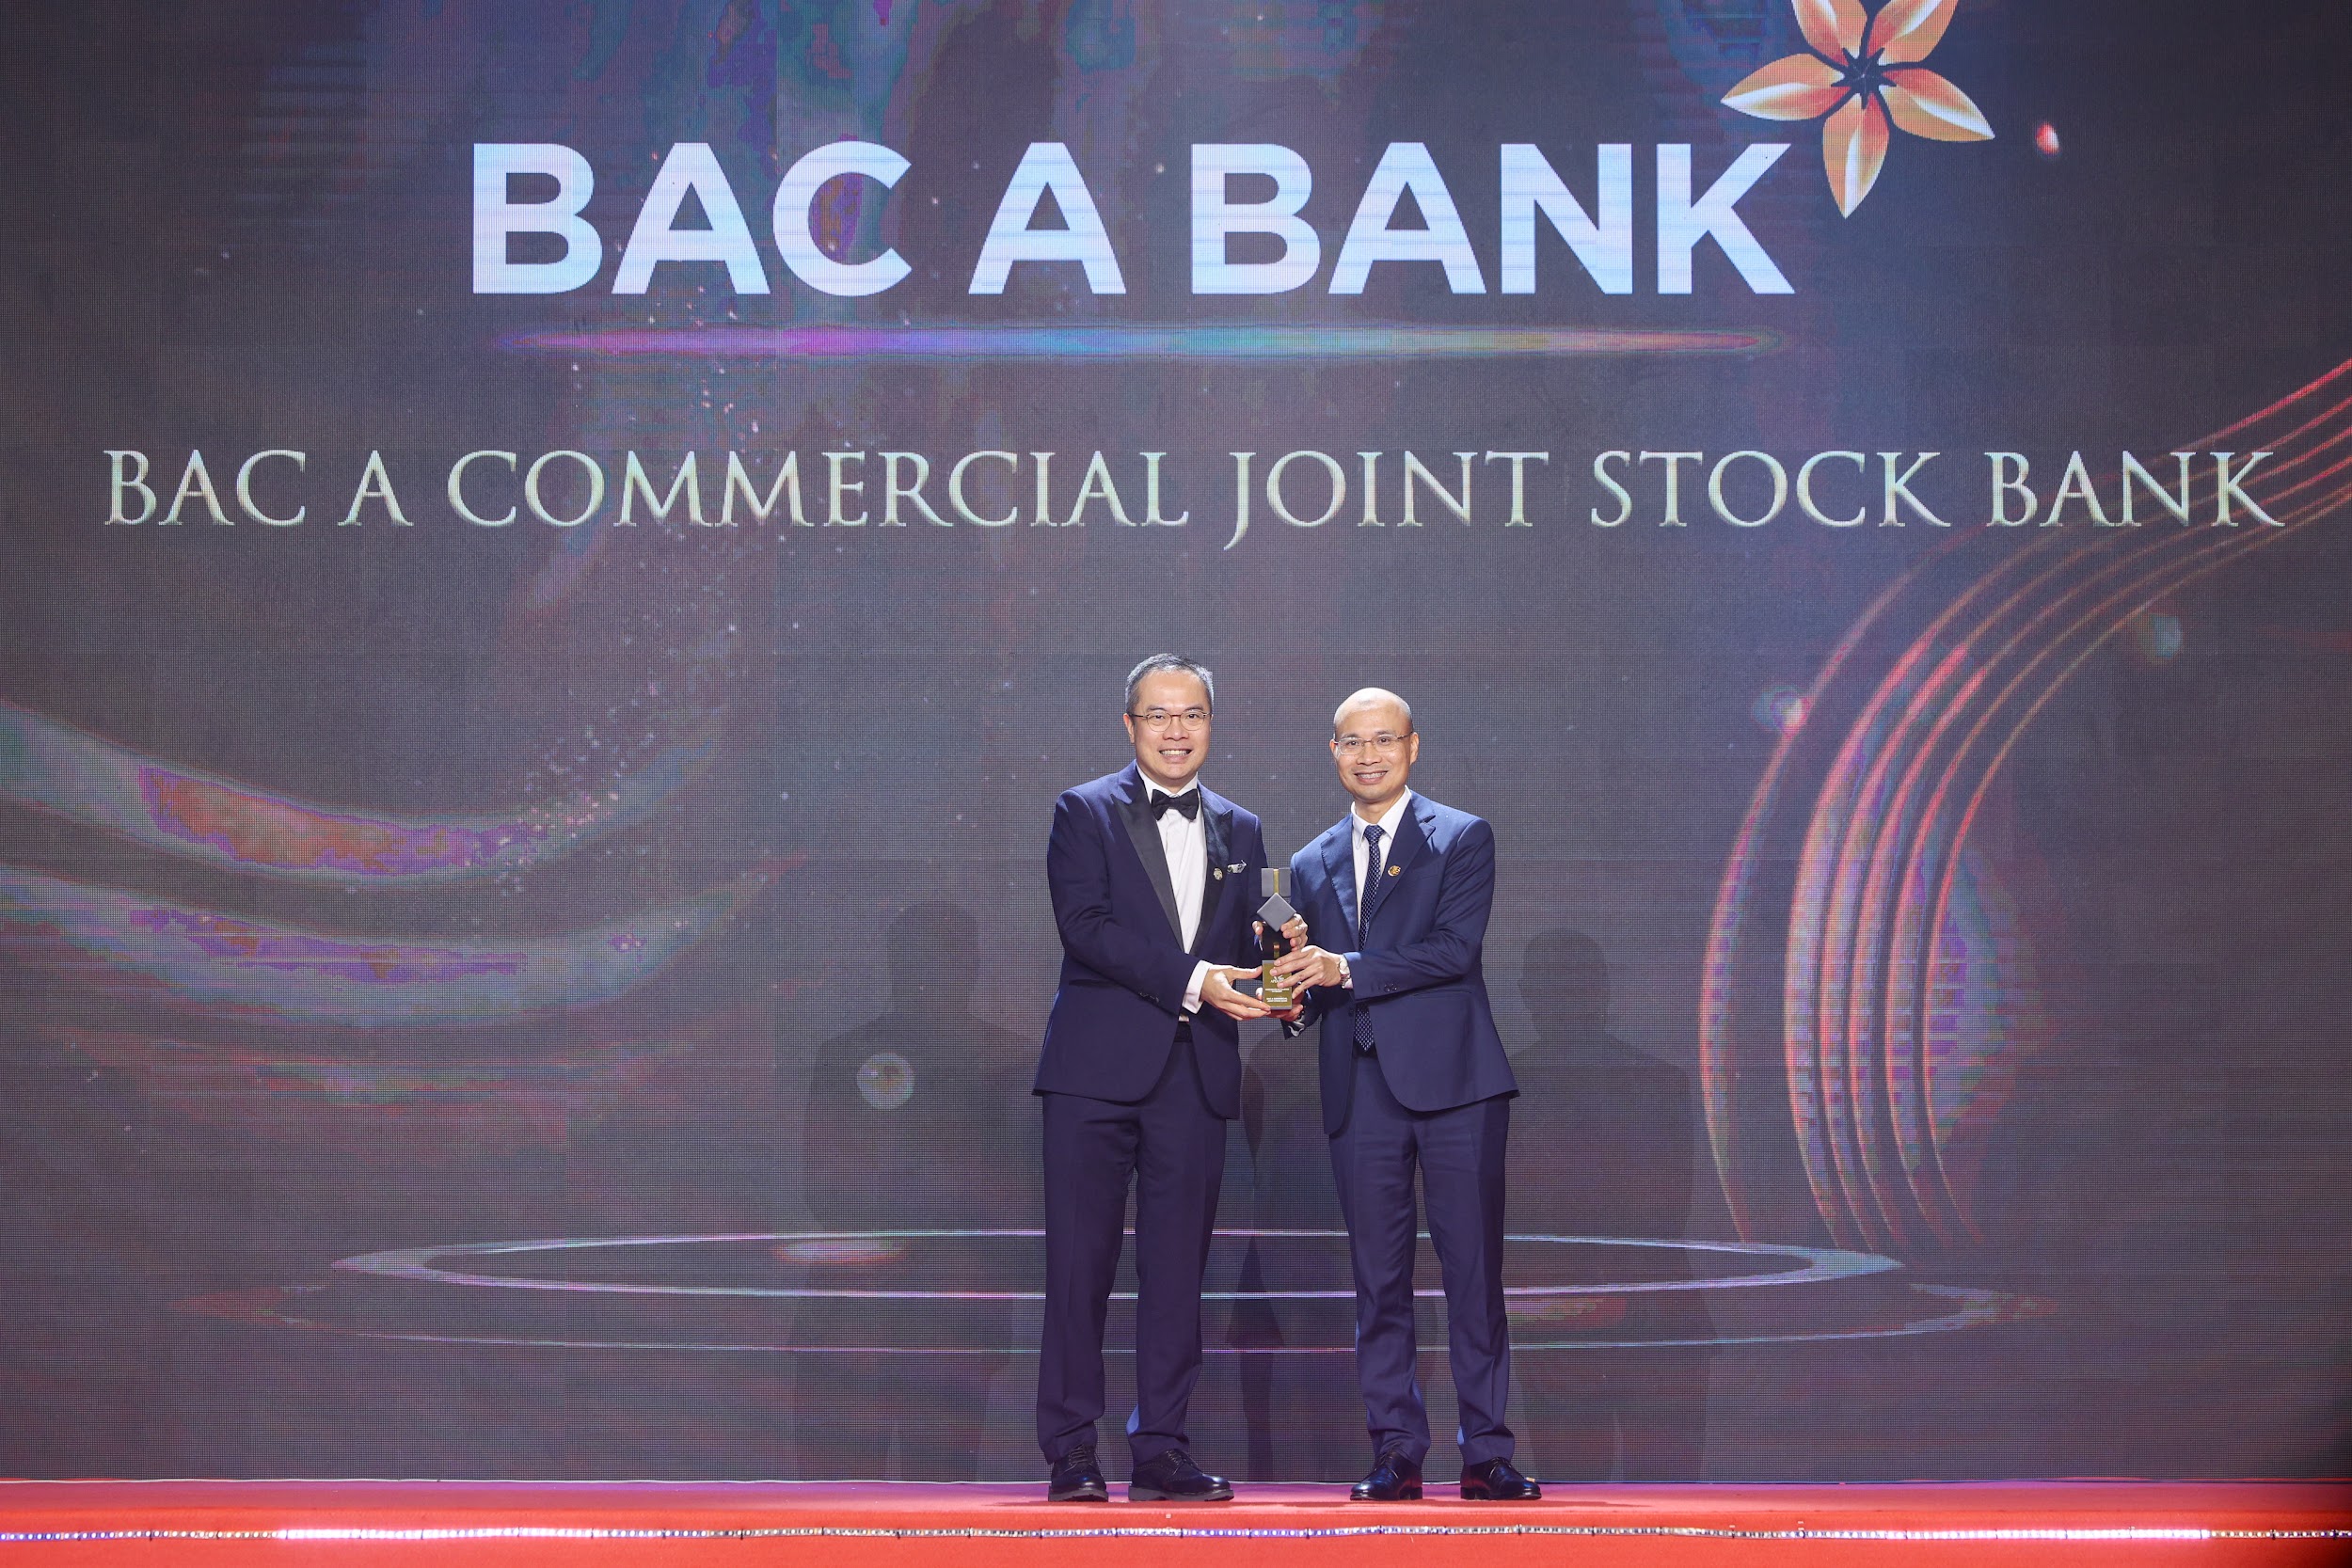 Kinh doanh bền vững giúp Bac A Bank thành doanh nghiệp xuất sắc châu Á - 1